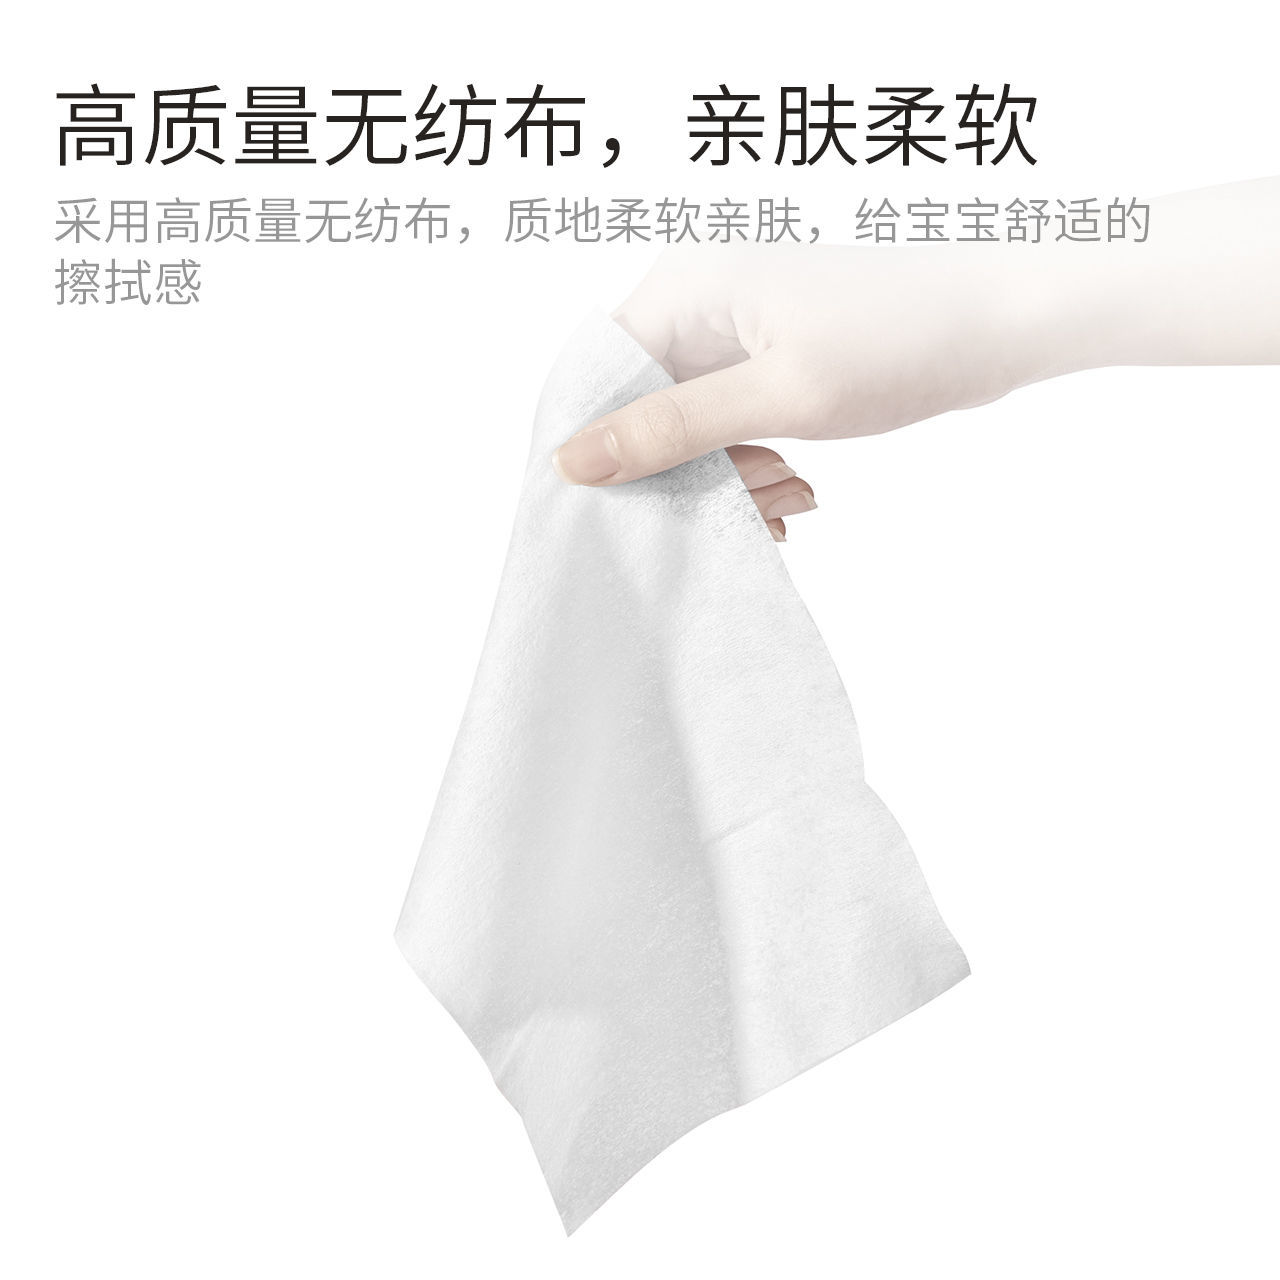 植护湿巾家用手口专用去油洁面湿纸巾家庭装湿巾独立小包装湿巾纸